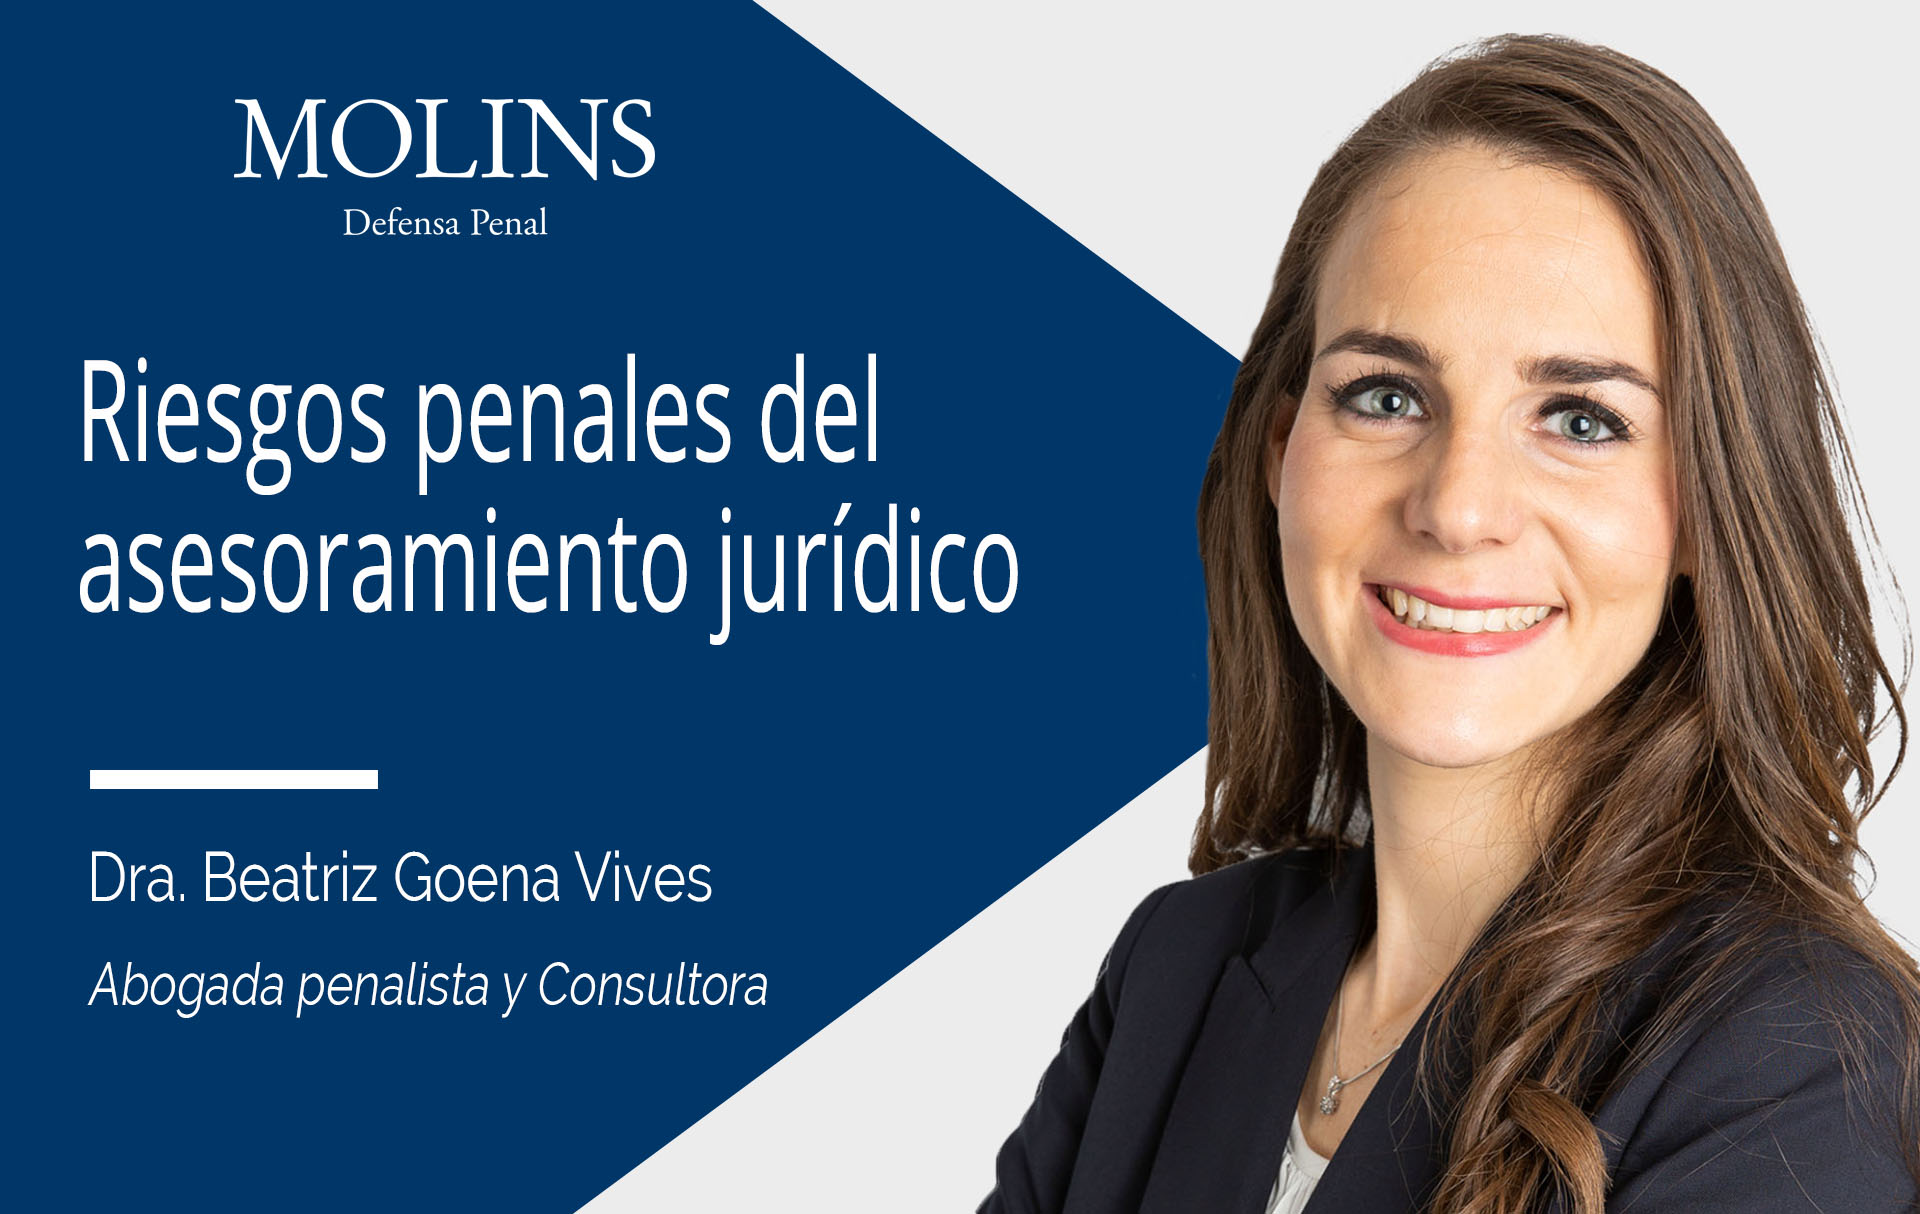 Cápsula: «Riesgos penales del asesoramiento jurídico en operaciones fiscales y mercantiles sensibles» a cargo de la Dra. Beatriz Goena